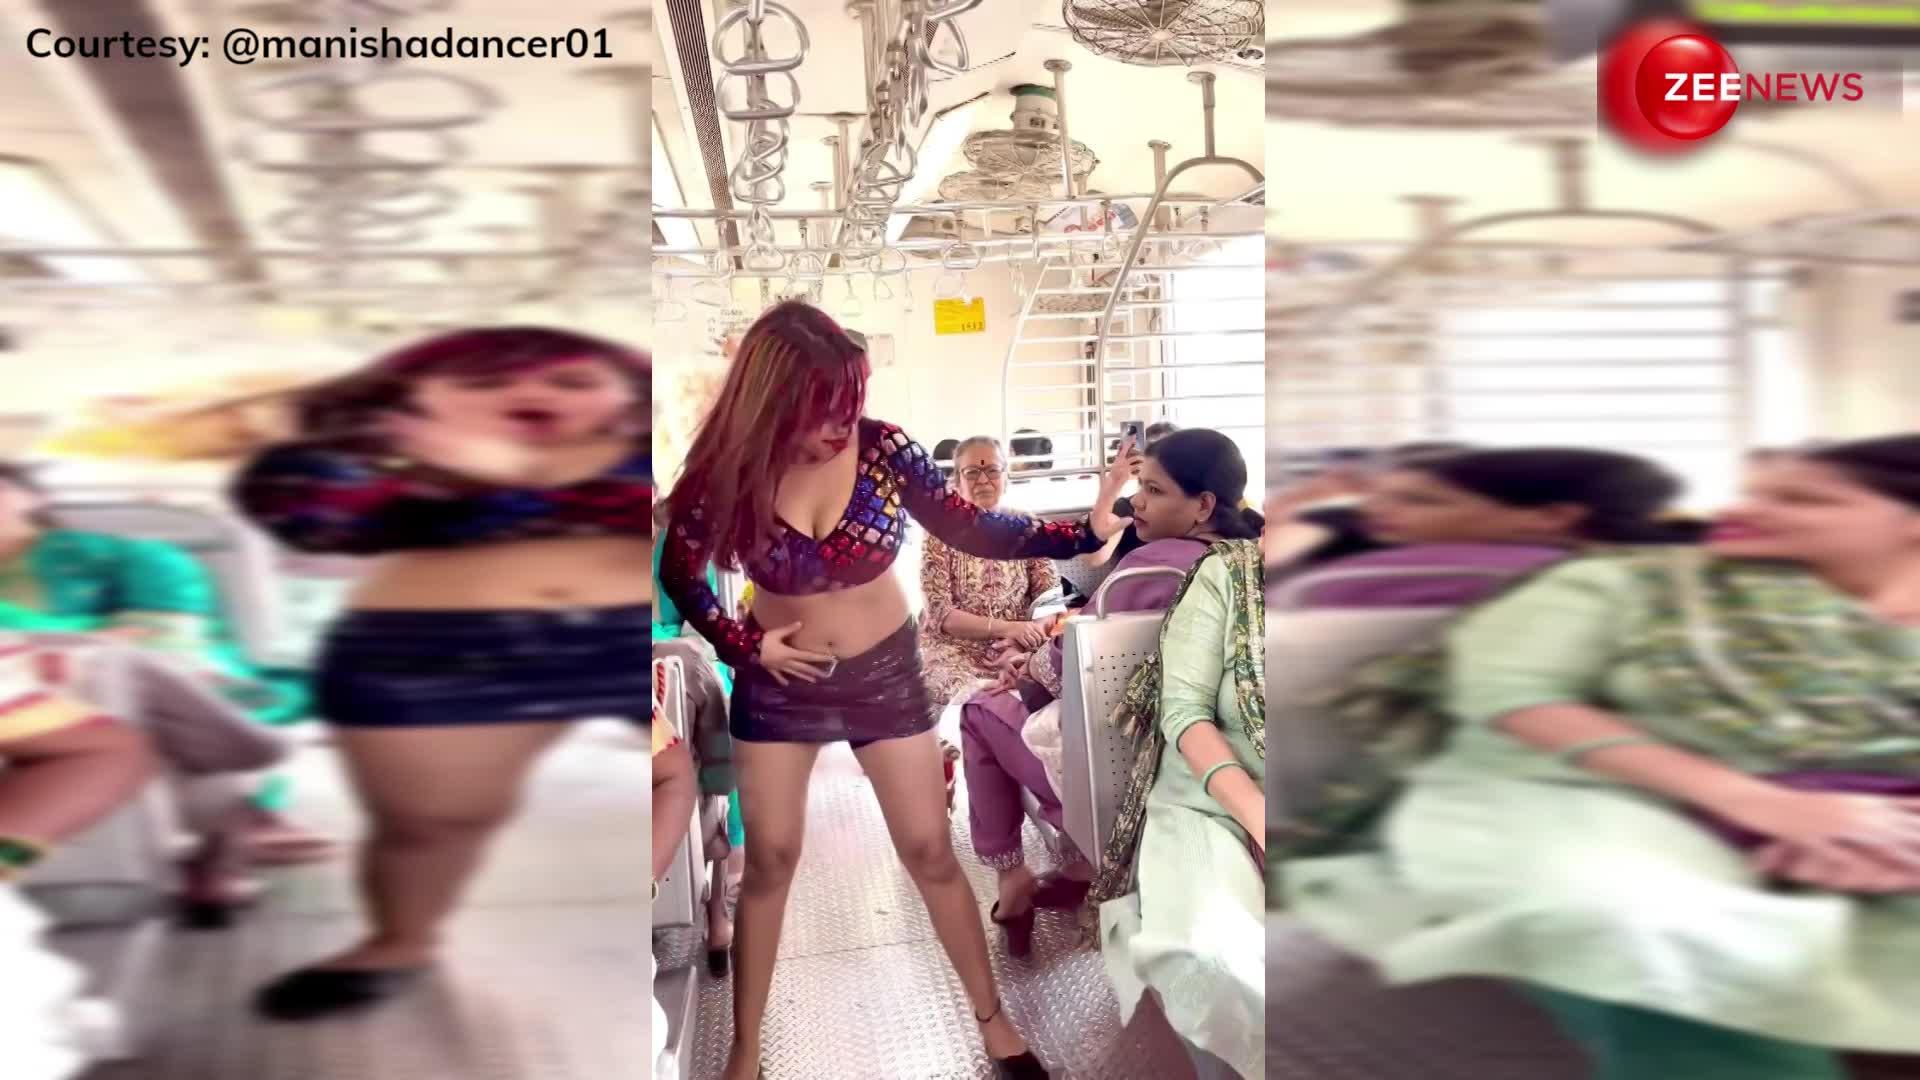 मुंबई की लोकल ट्रेन में लड़की ने किया अजीबोगरीब डांस, देखती रह गई आंटियां, लोगों ने कमेंट्स में कर दी कार्रवाई की मांग